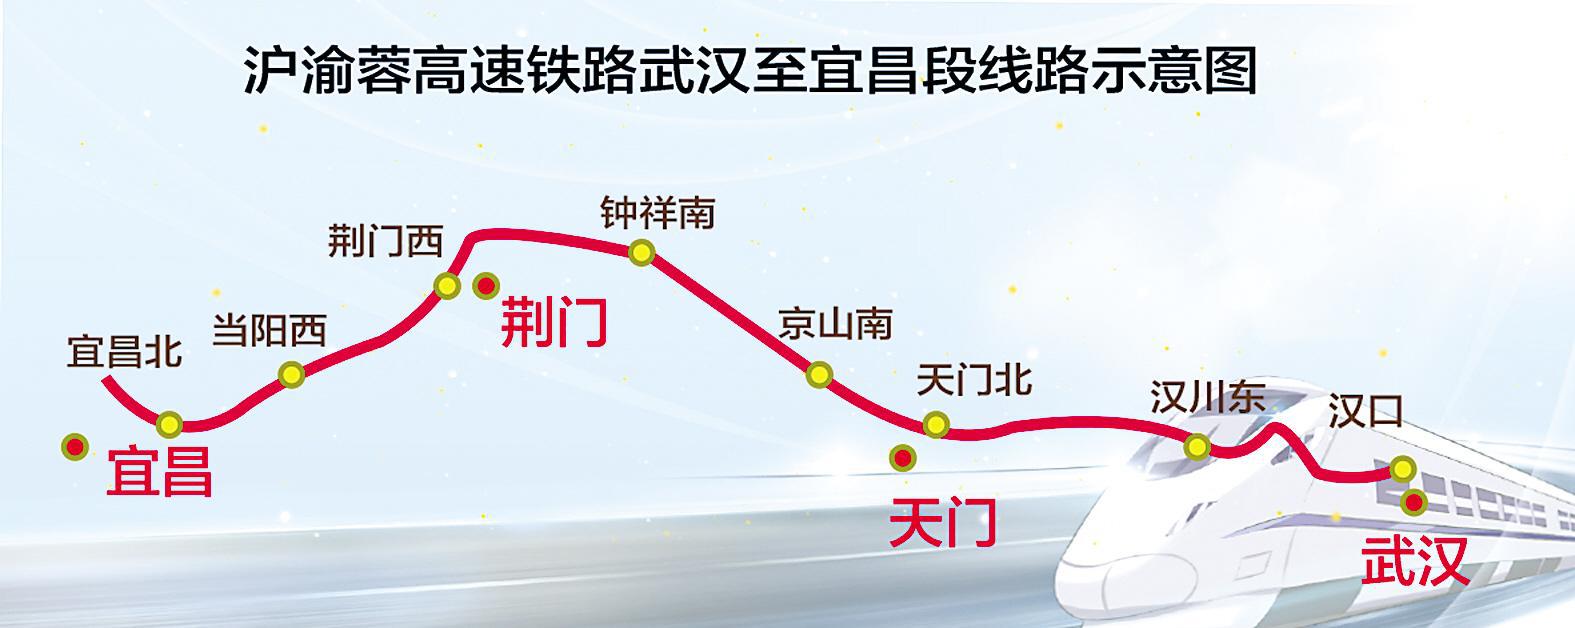 沿江高铁武宜段建设工期4年,全线建成后——武汉3小时"飙"到上海重庆